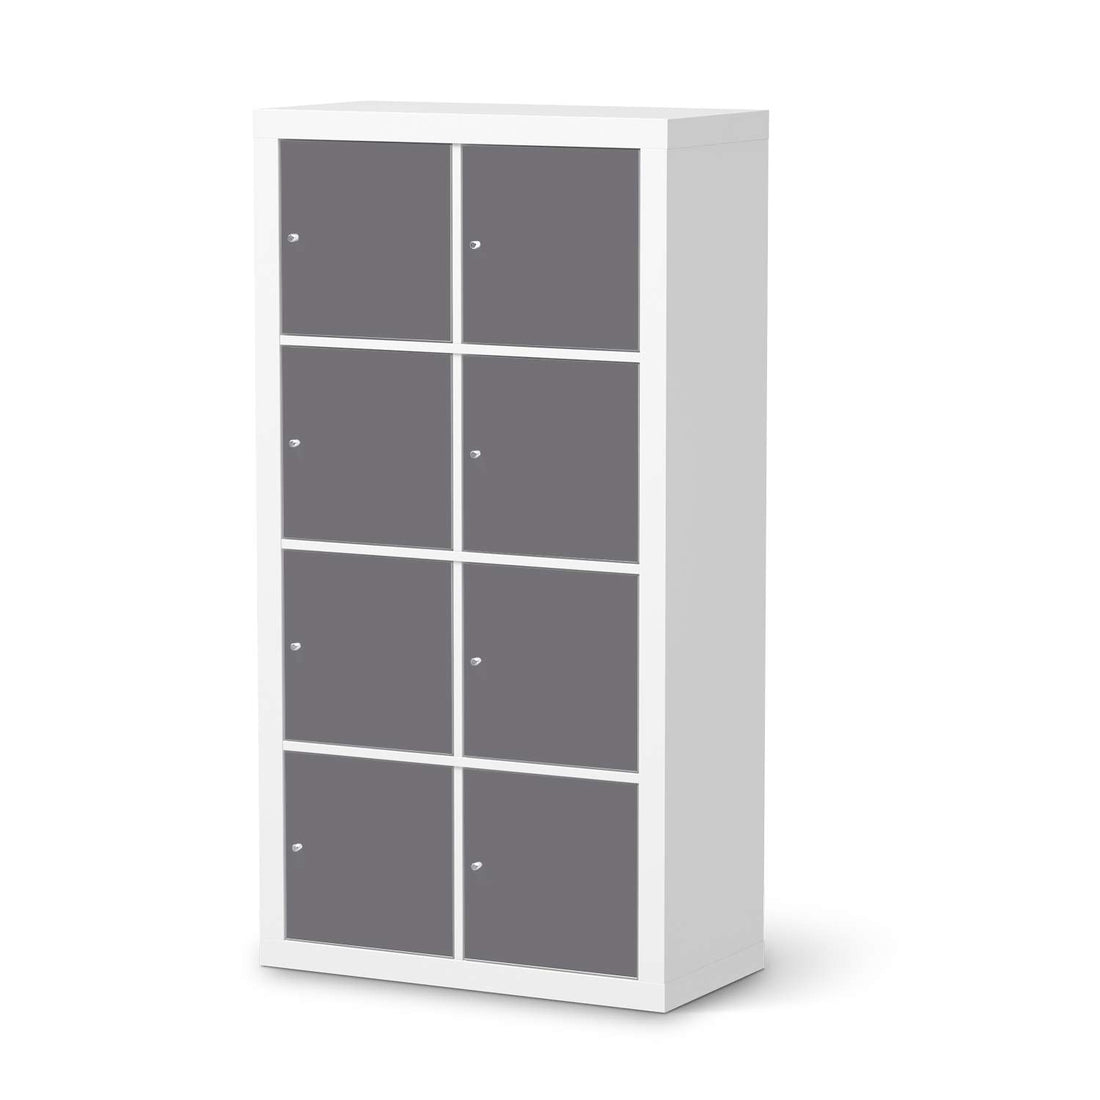 Folie für Möbel Grau Light - IKEA Kallax Regal 8 Türen  - weiss